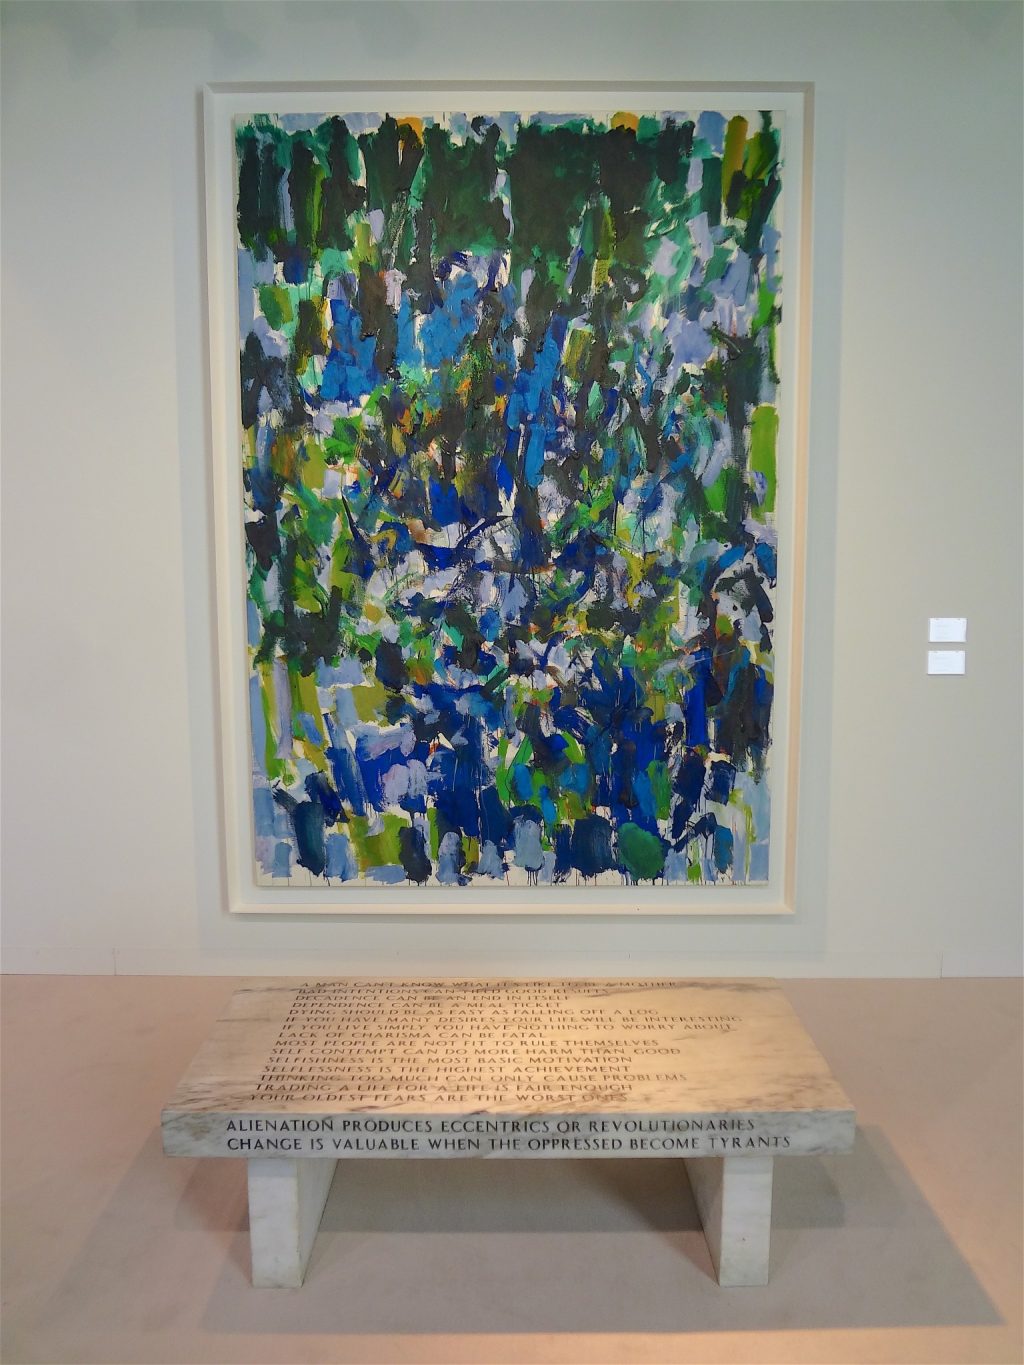 ジョアン・ミッチェル Joan Mitchell “Untitled” 1977, Oil on canvas, 260.4 x 180.3 cm (Cheim & Read, 2015)